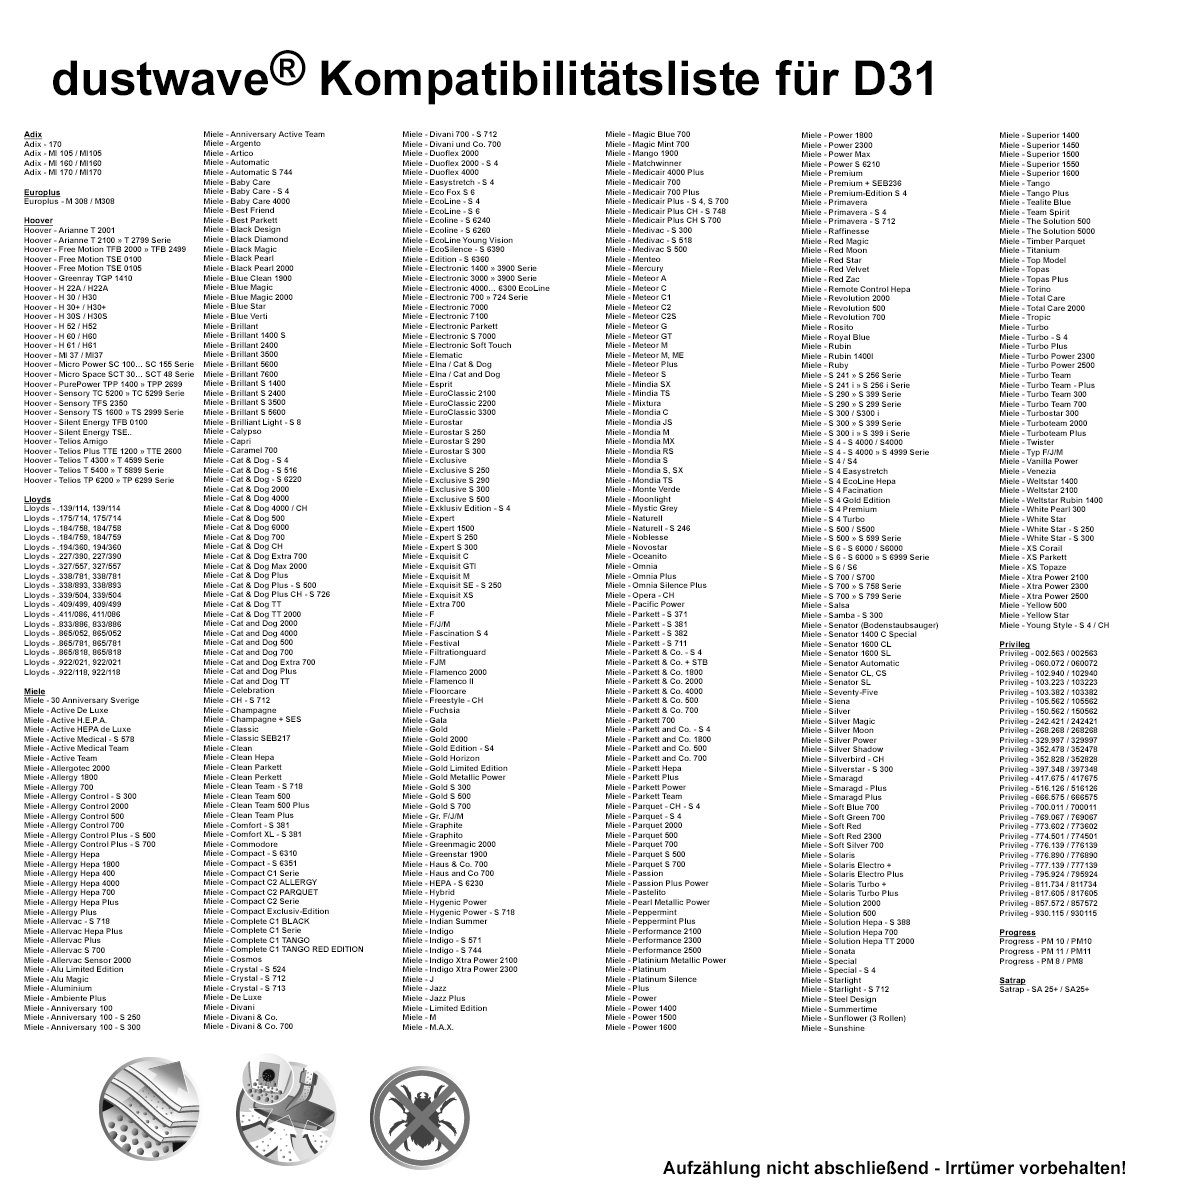 Dustwave Staubsaugerbeutel Megapack, 20 Megapack, Premium 2 zuschneidbar) + für 20 Staubsaugerbeutel St., - 170 Adix Hepa-Filter passend (ca. 15x15cm 170, - Adix